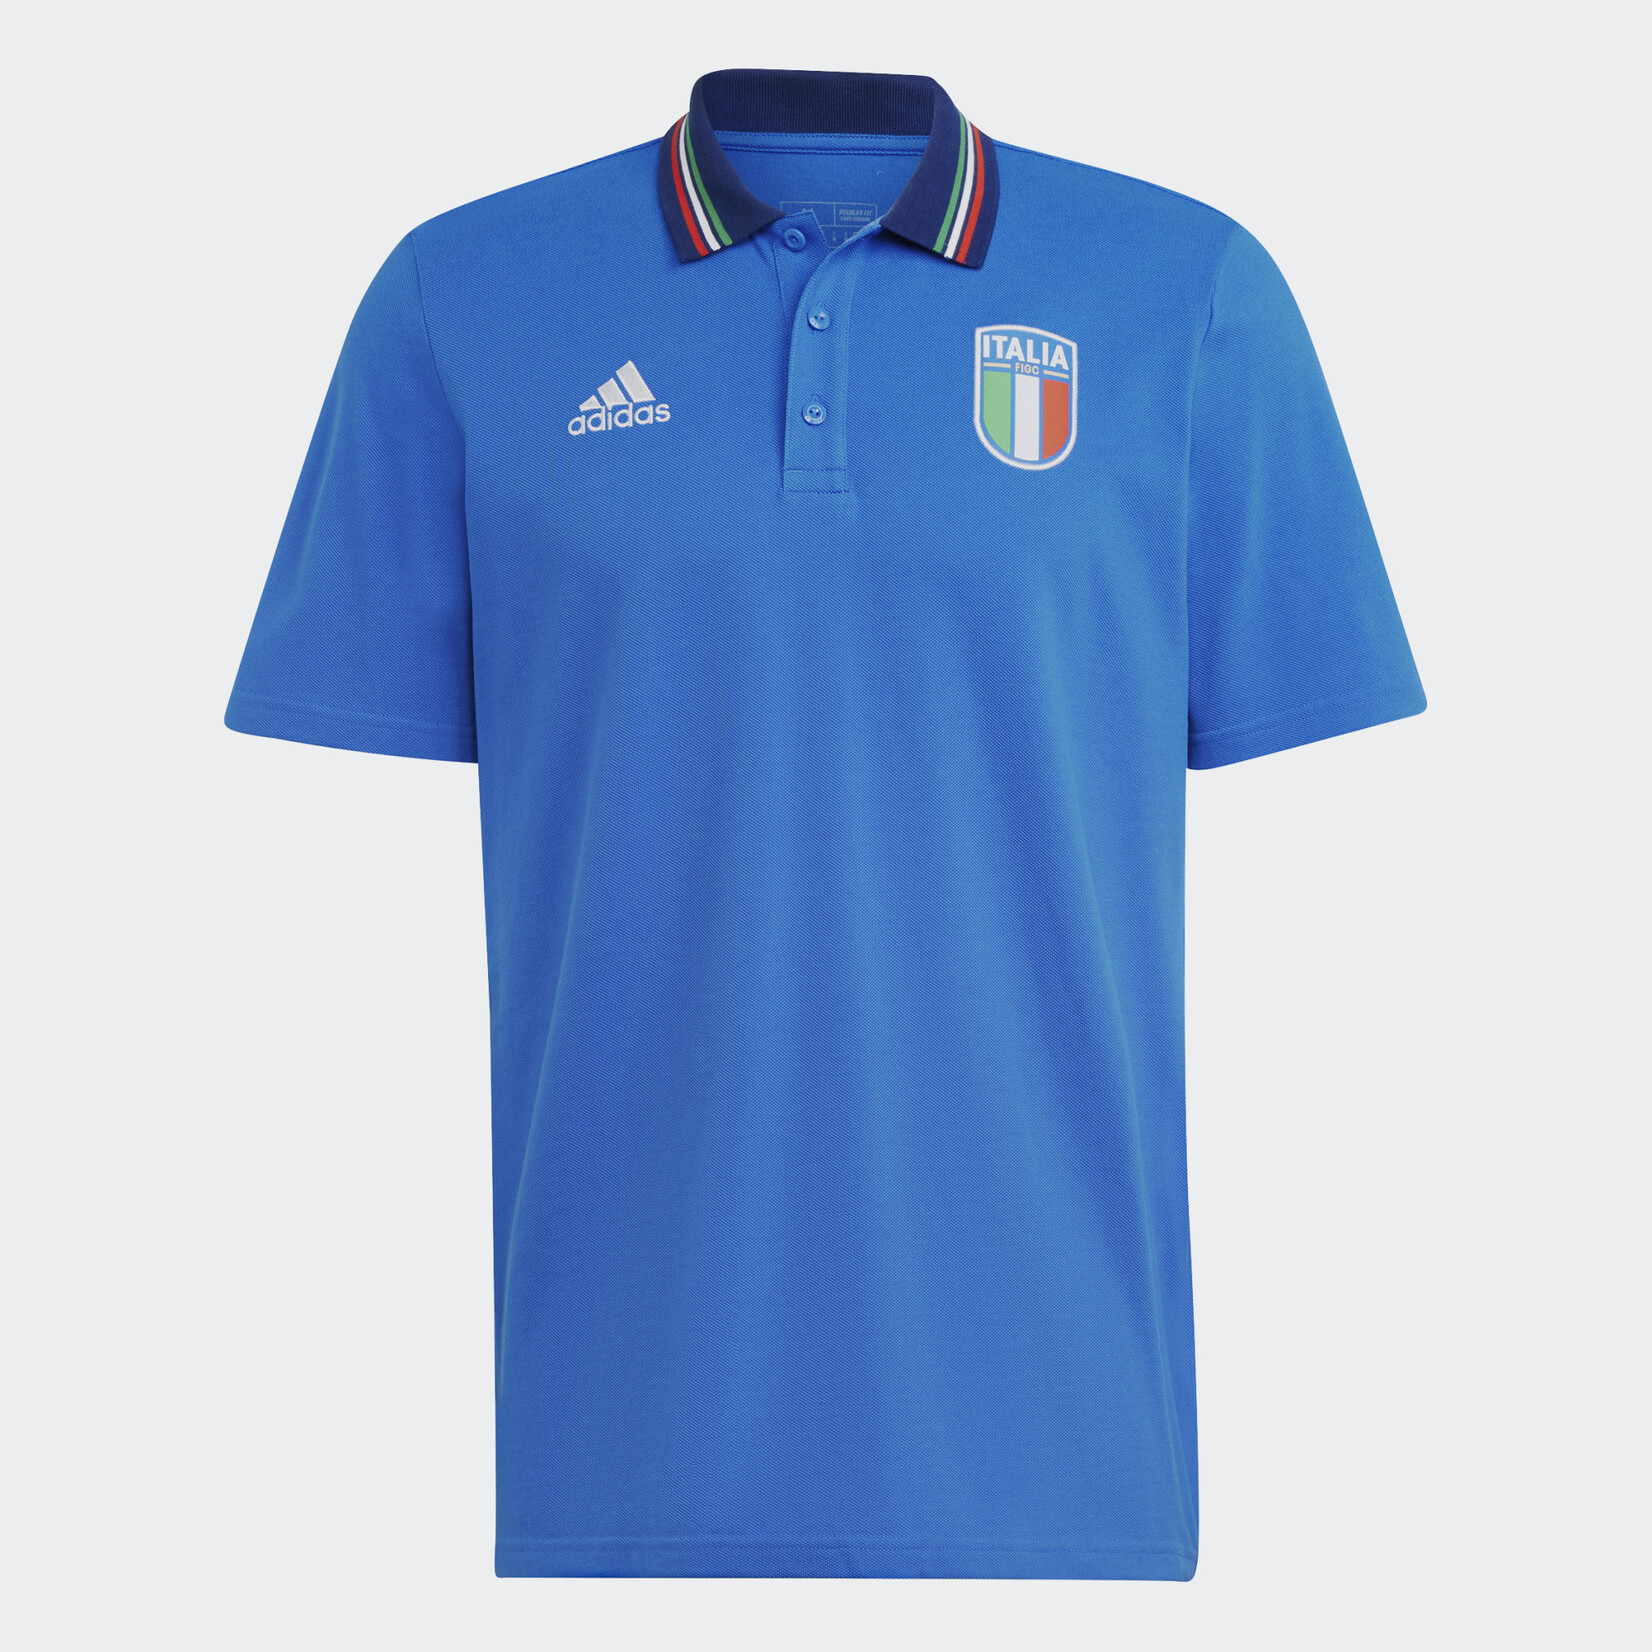 Adidas Italy Short Sleeve Polo